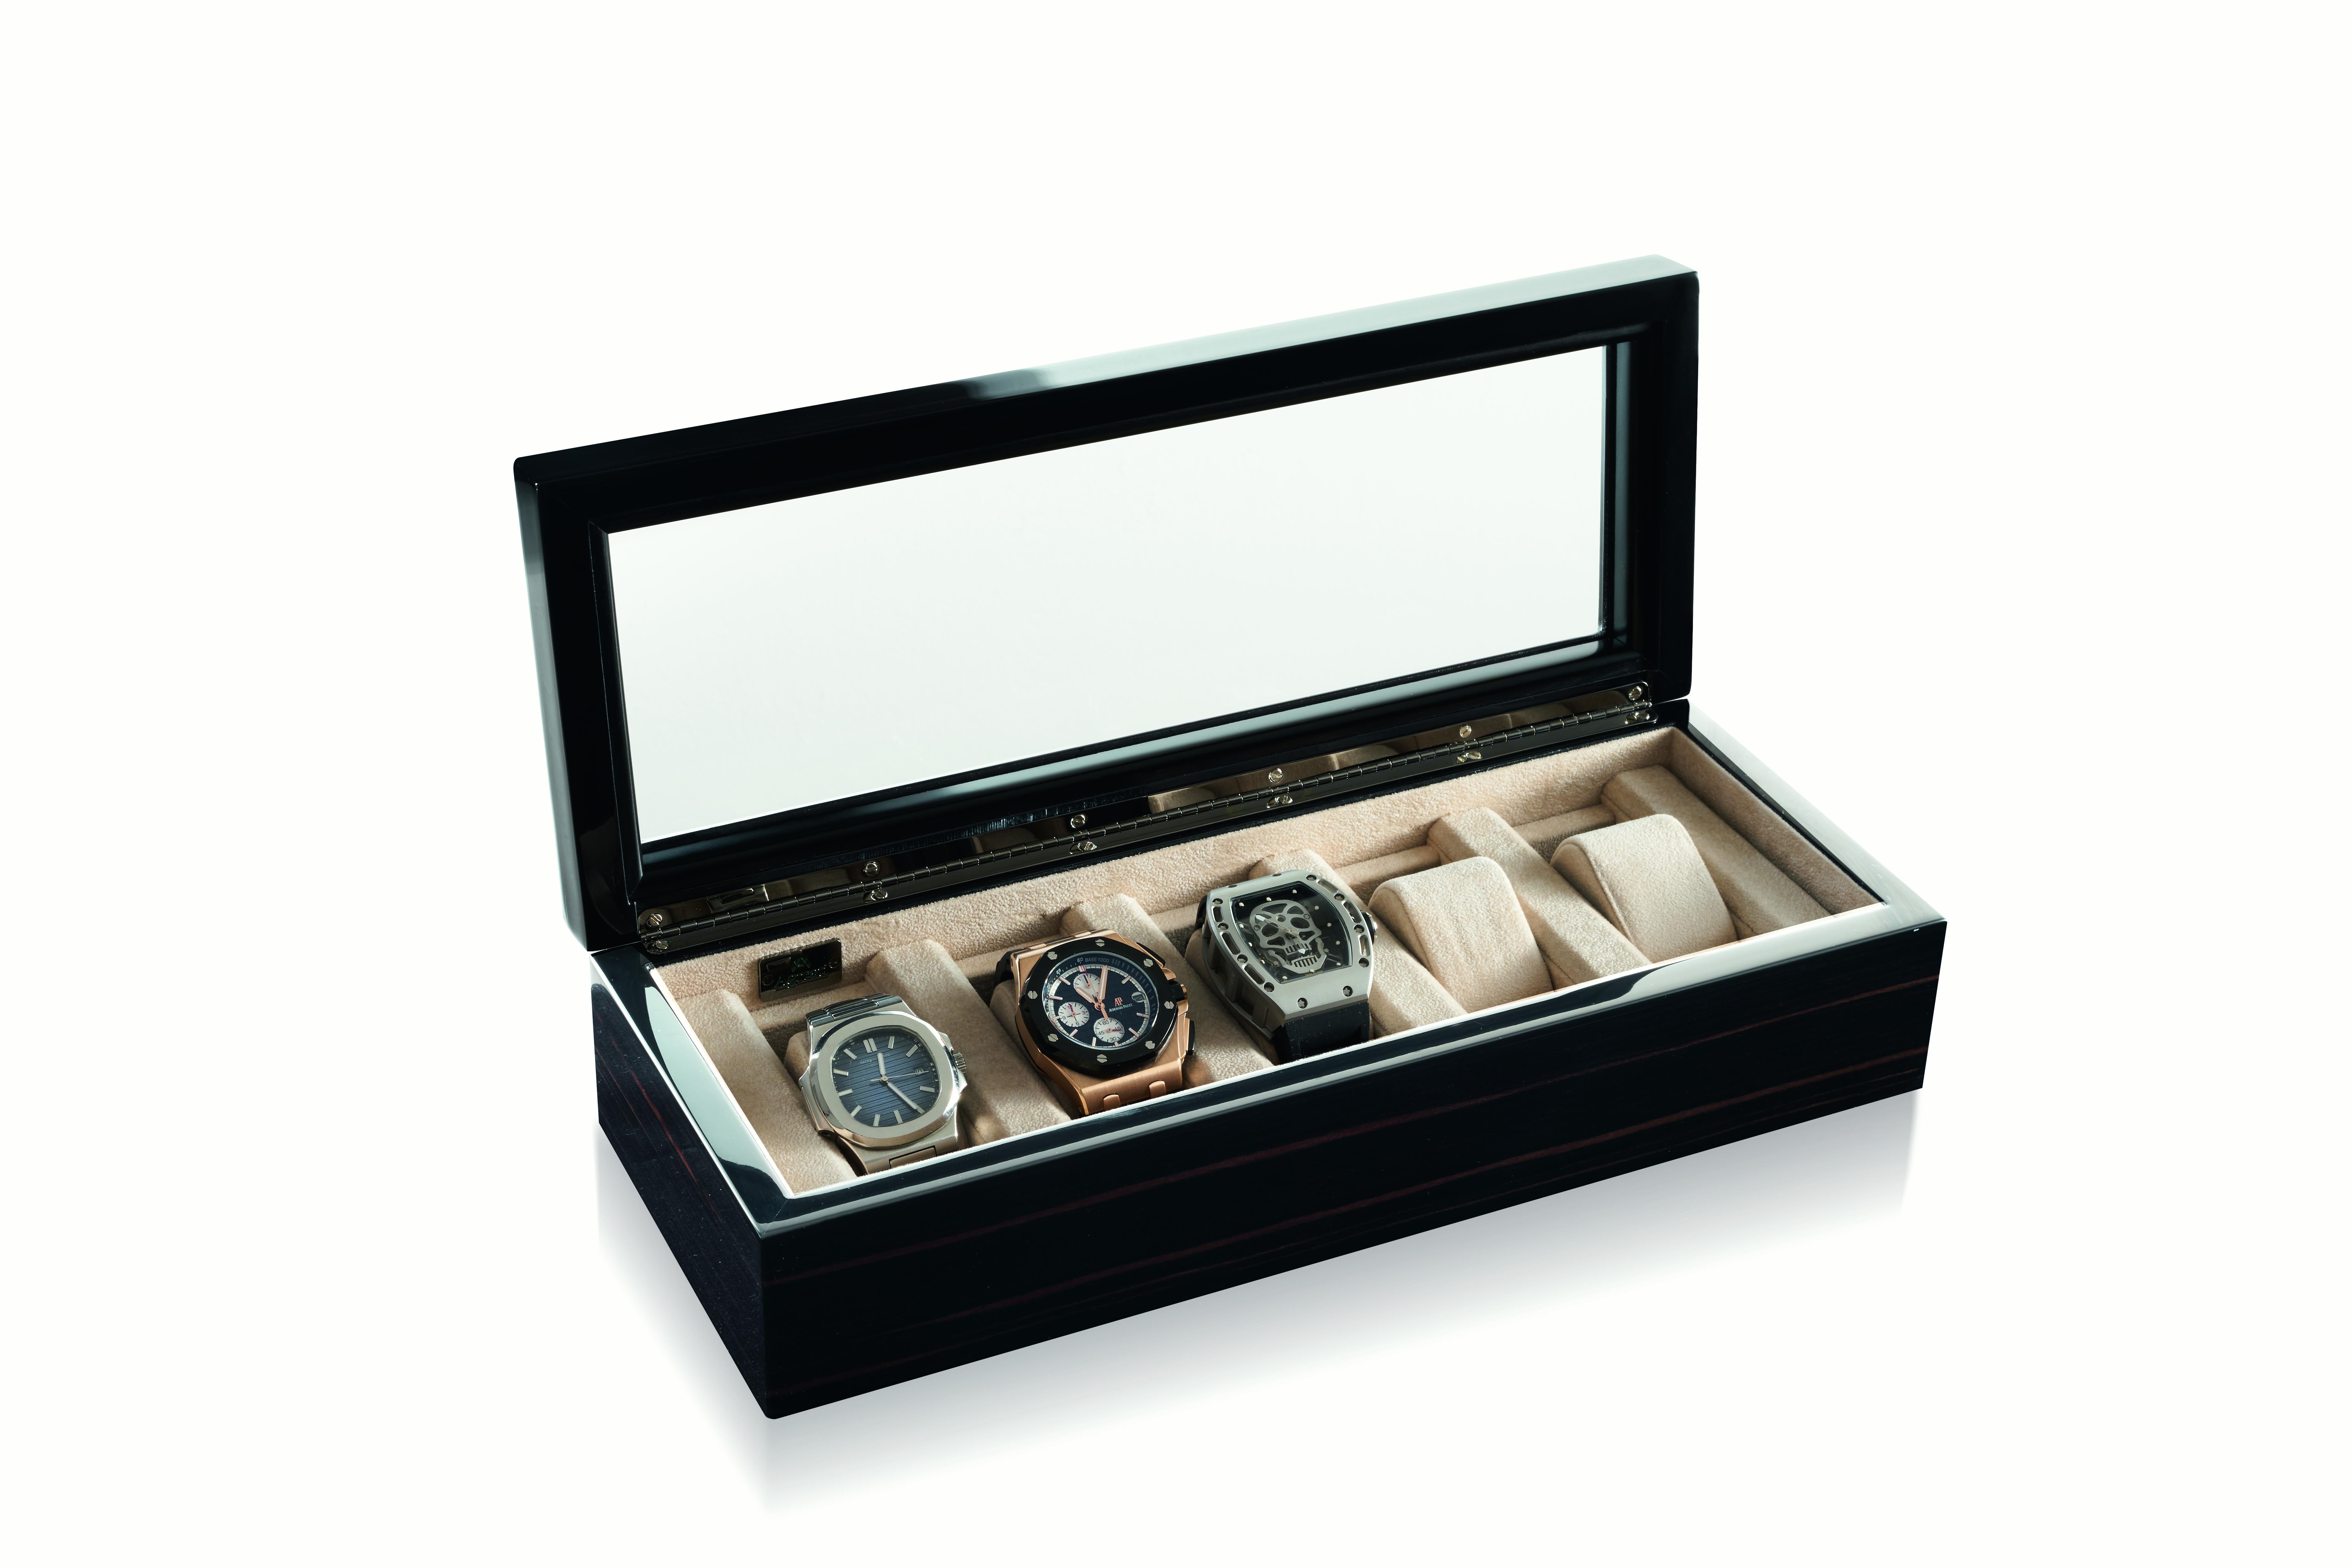 Coffret en bois poli pour cinq montres, doublé d'une protection en ultrasuede. Charnière dans le ruthénium. Boîte uniquement : les montres ne sont pas incluses.